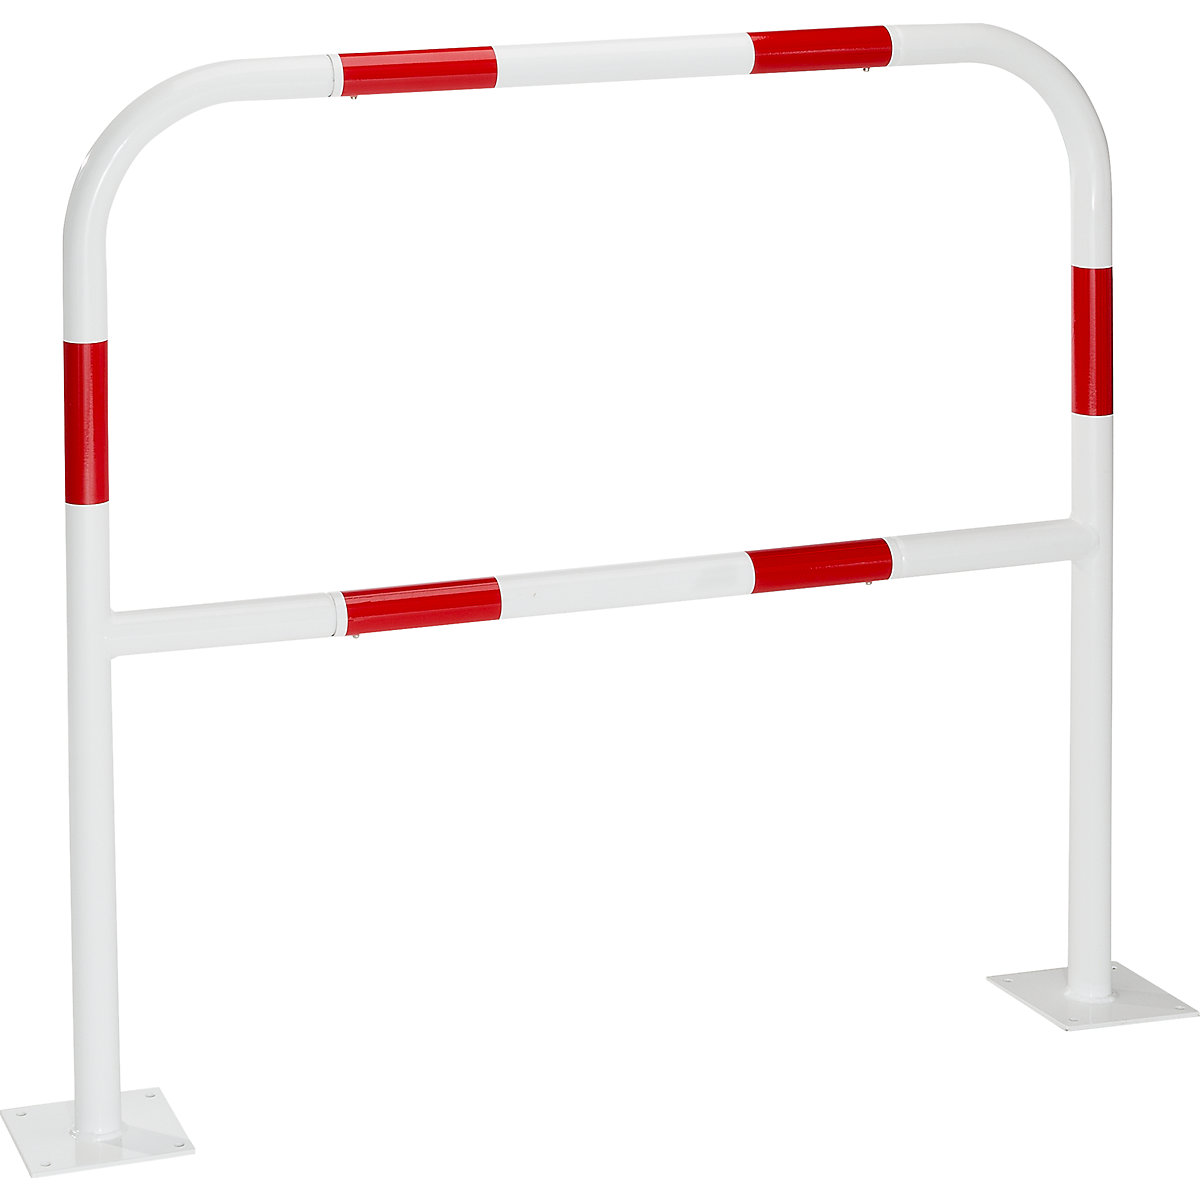 Arco de segurança para zonas de perigo, para fixar por buchas, vermelho / branco, largura 1000 mm-8